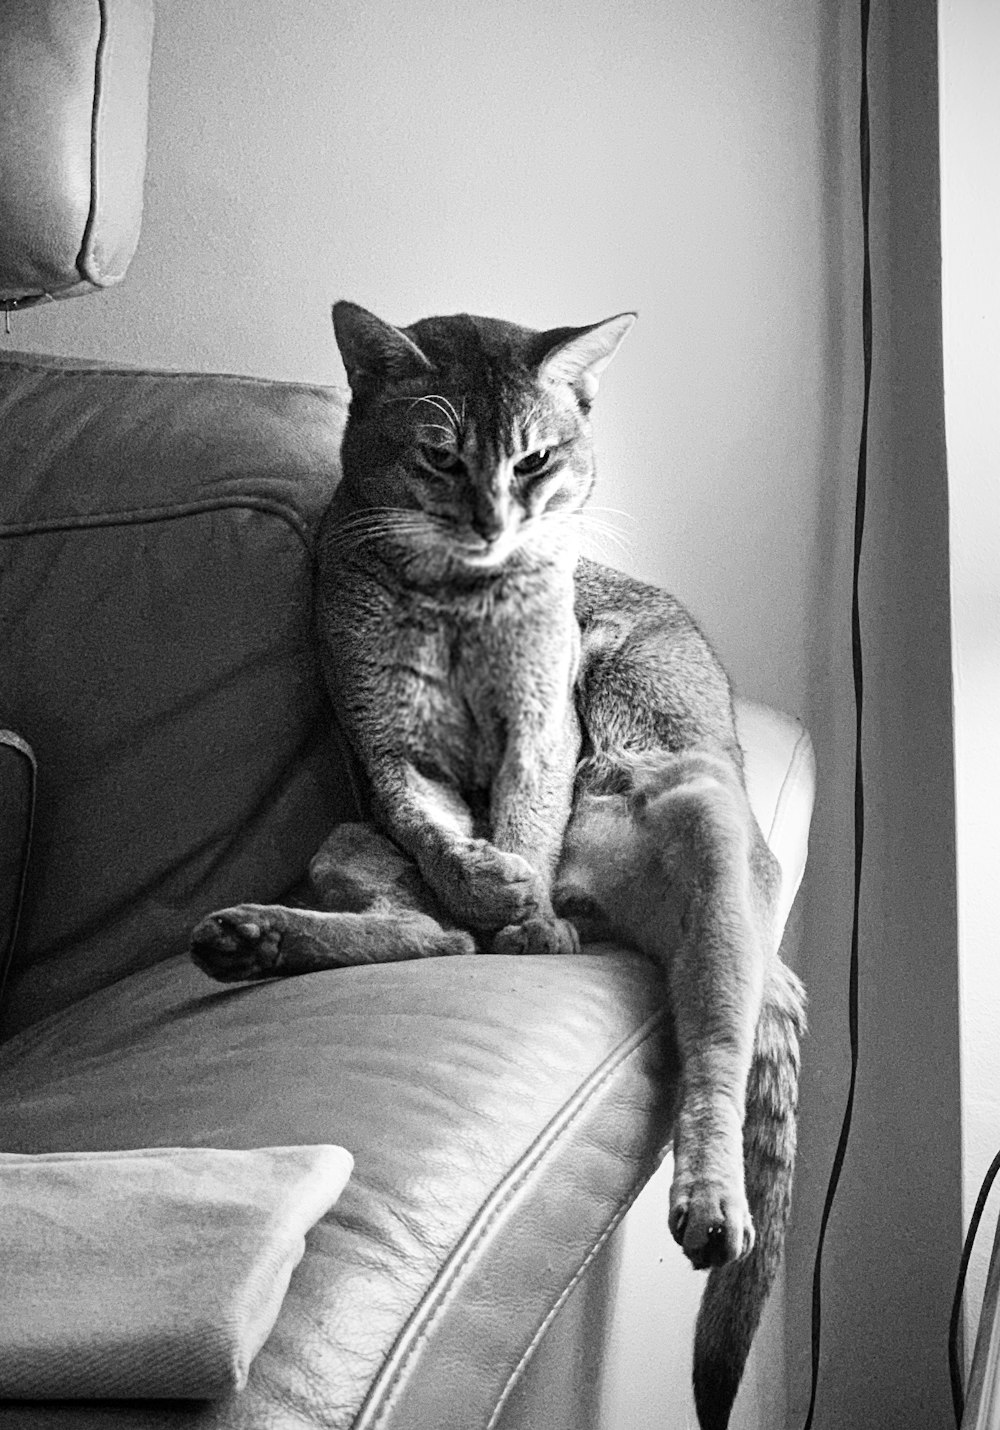 ソファの上のぶち猫のグレースケール写真